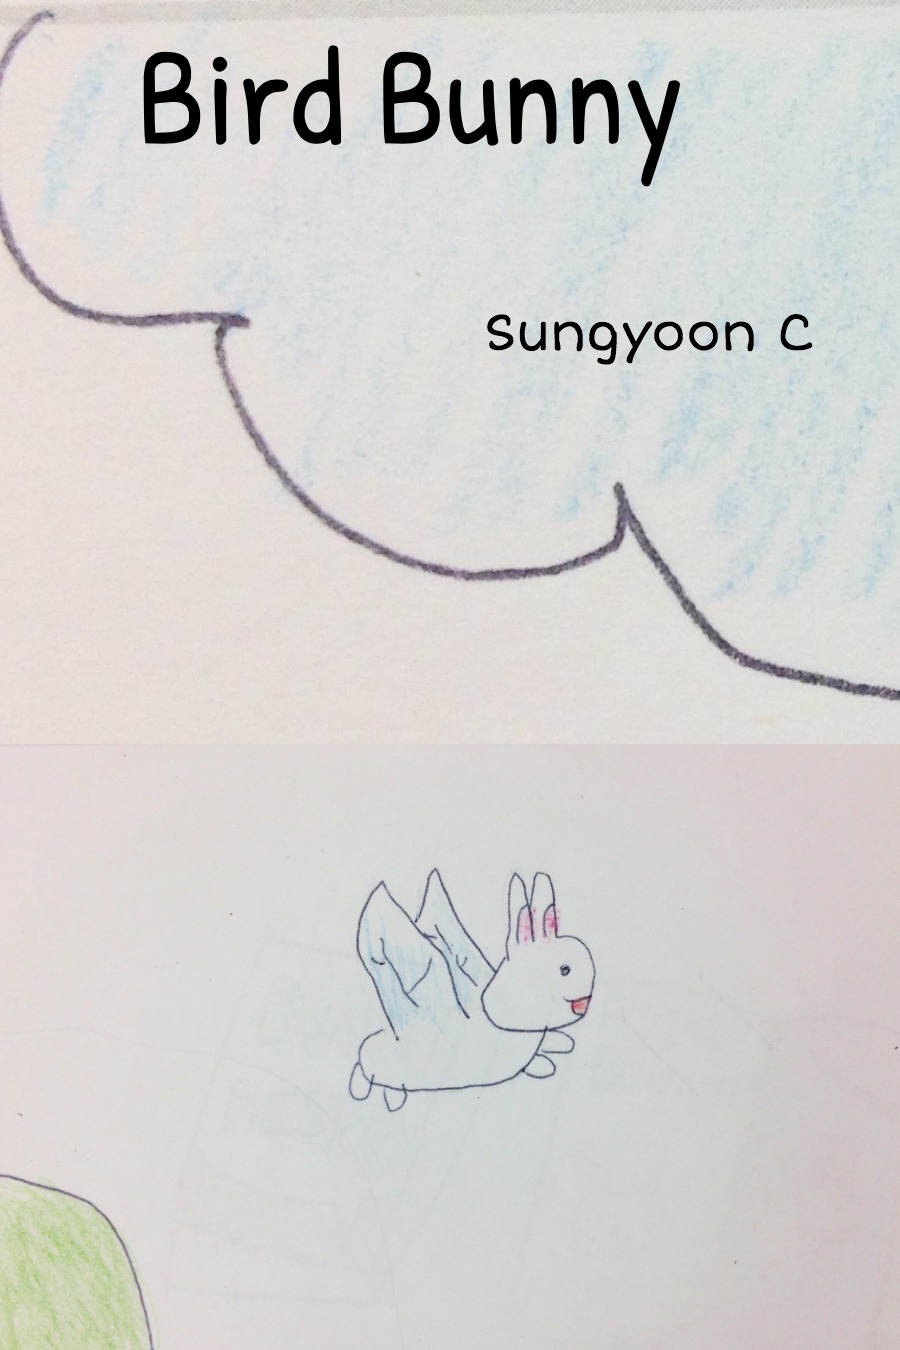 Bird Bunny by Sungyoon C